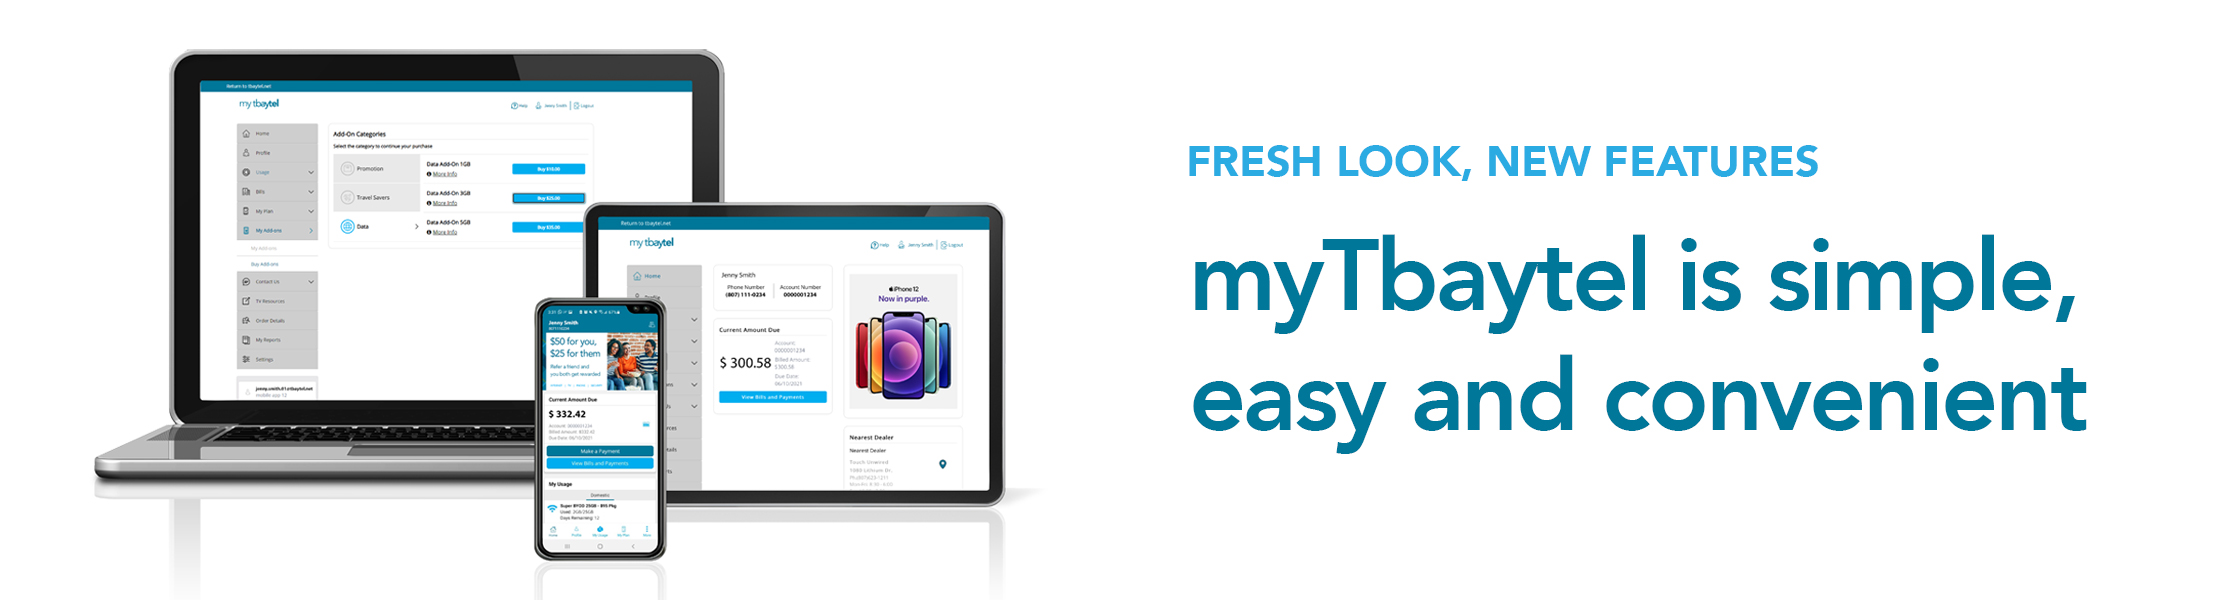 Fresh Look, New Features - myTbaytel